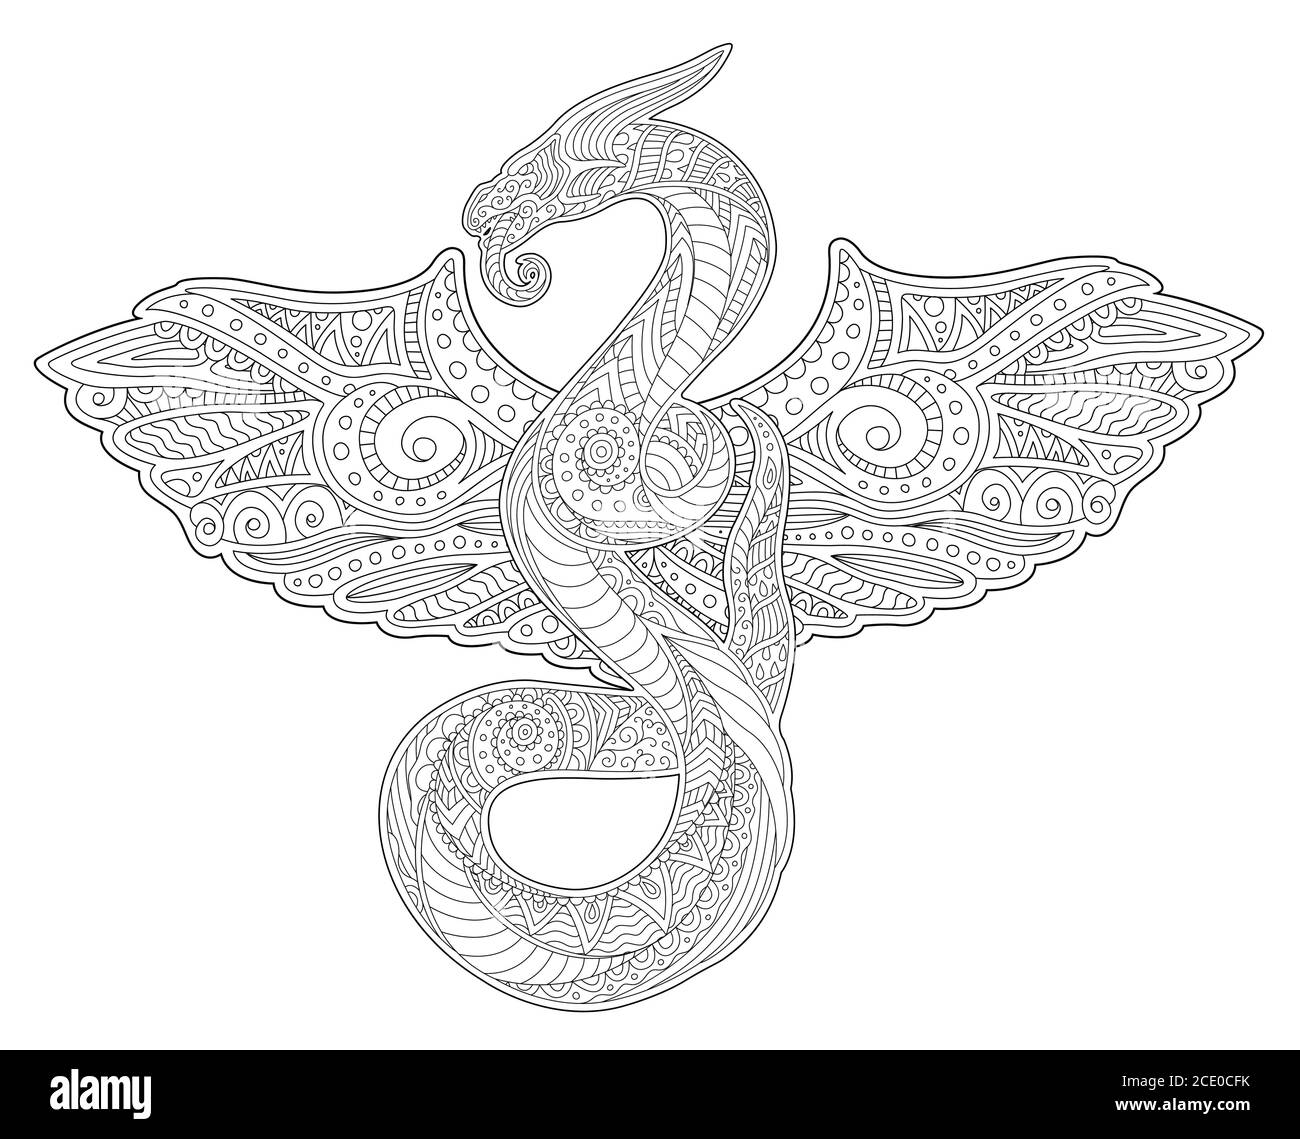 Schöne Erwachsene Malbuch Kunst mit stilisierten mythischen Schlange und Flügel auf weißem Hintergrund Stock Vektor